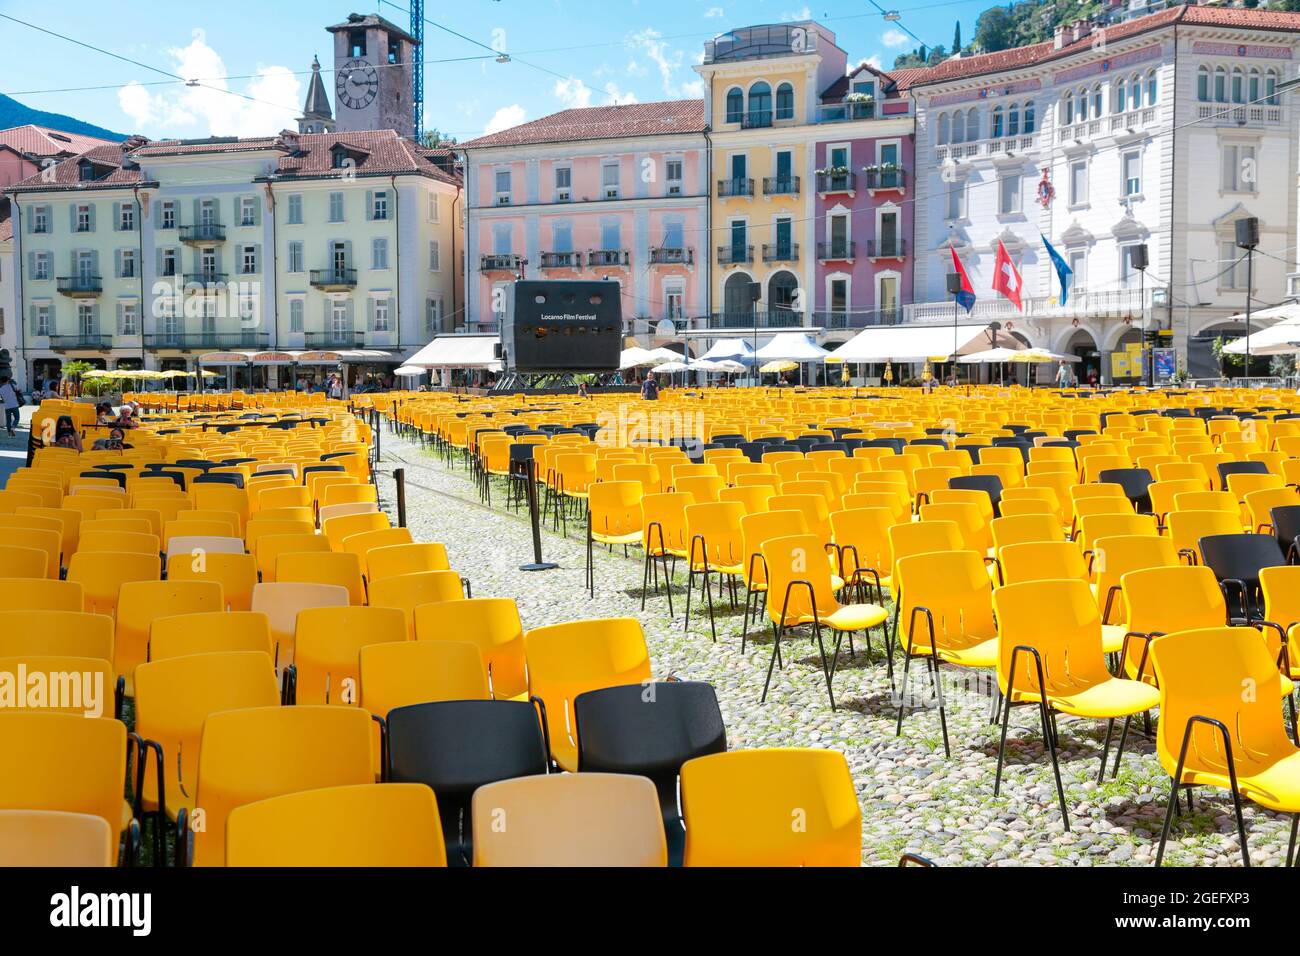 Annual International Locarno Film Festival, famous international cinema  festival based in at the Piazza Grande in Locarno, Switzerland Stock Photo  - Alamy